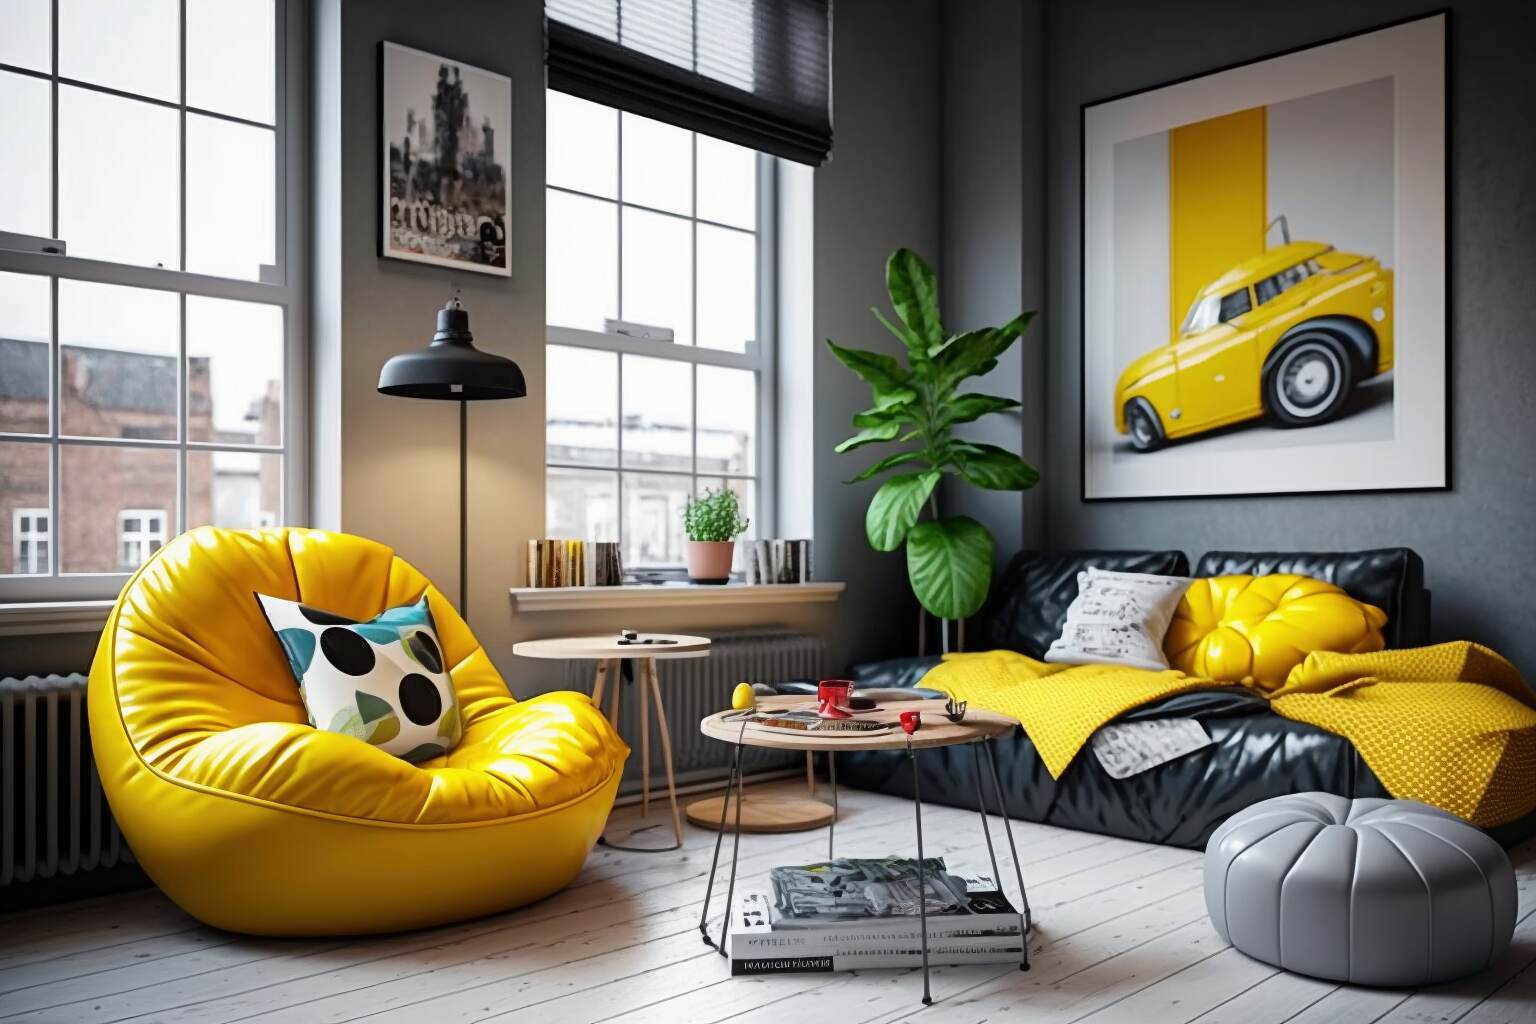 Ein Trendiges Studio-Apartment Mit Einem Leuchtend Gelben Beanbag-Stuhl.